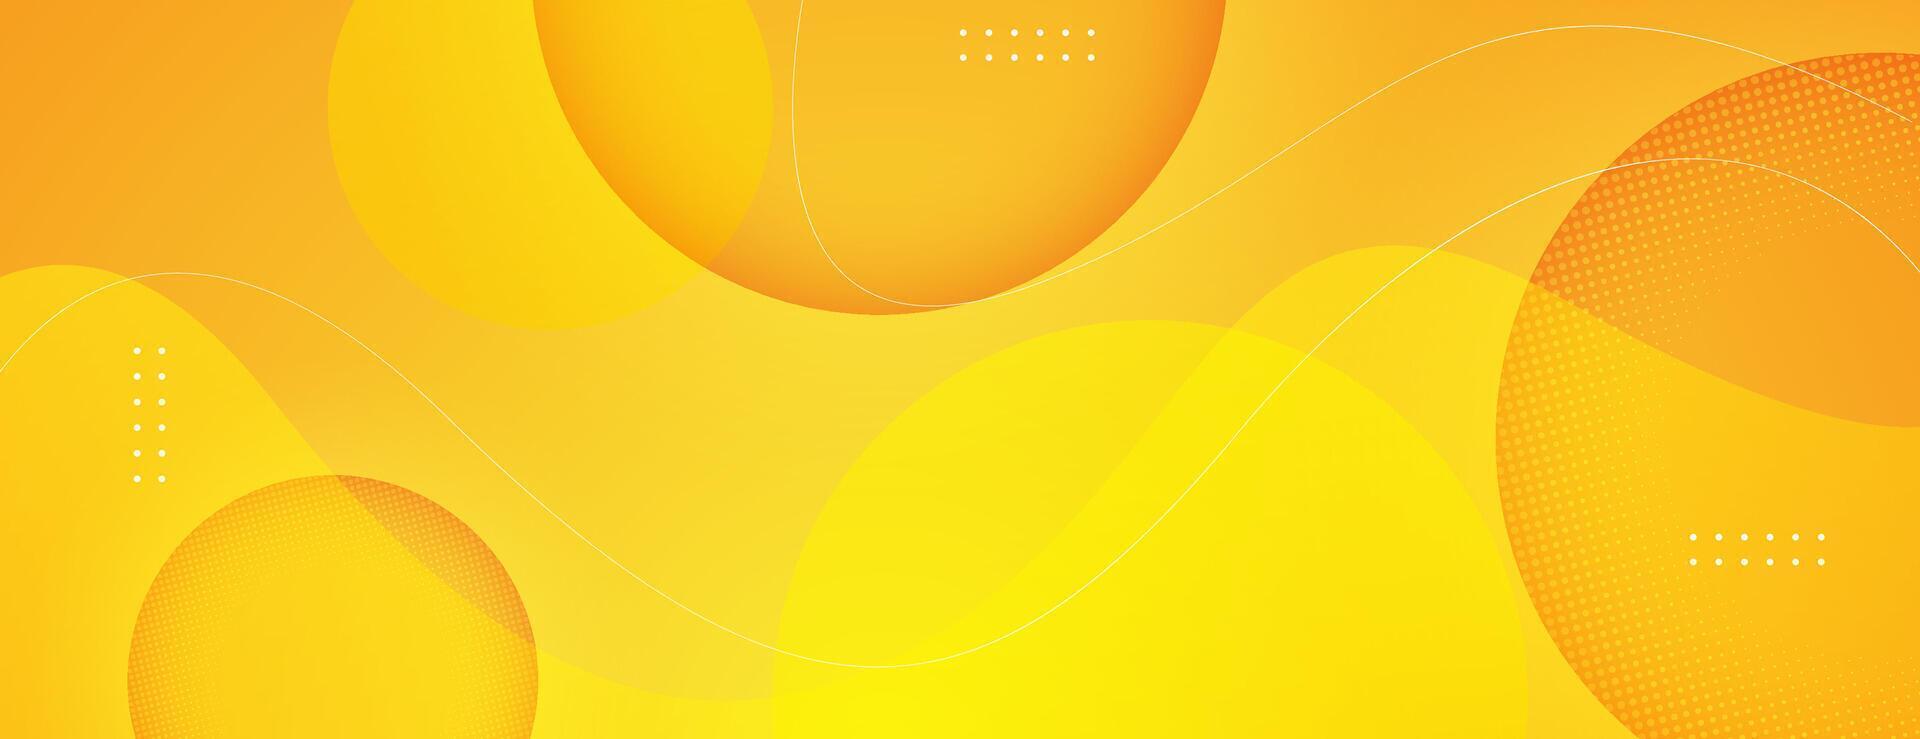 abstrakt Orange Gelb Hintergrund mit kreisförmig Formen. Vektor Illustration